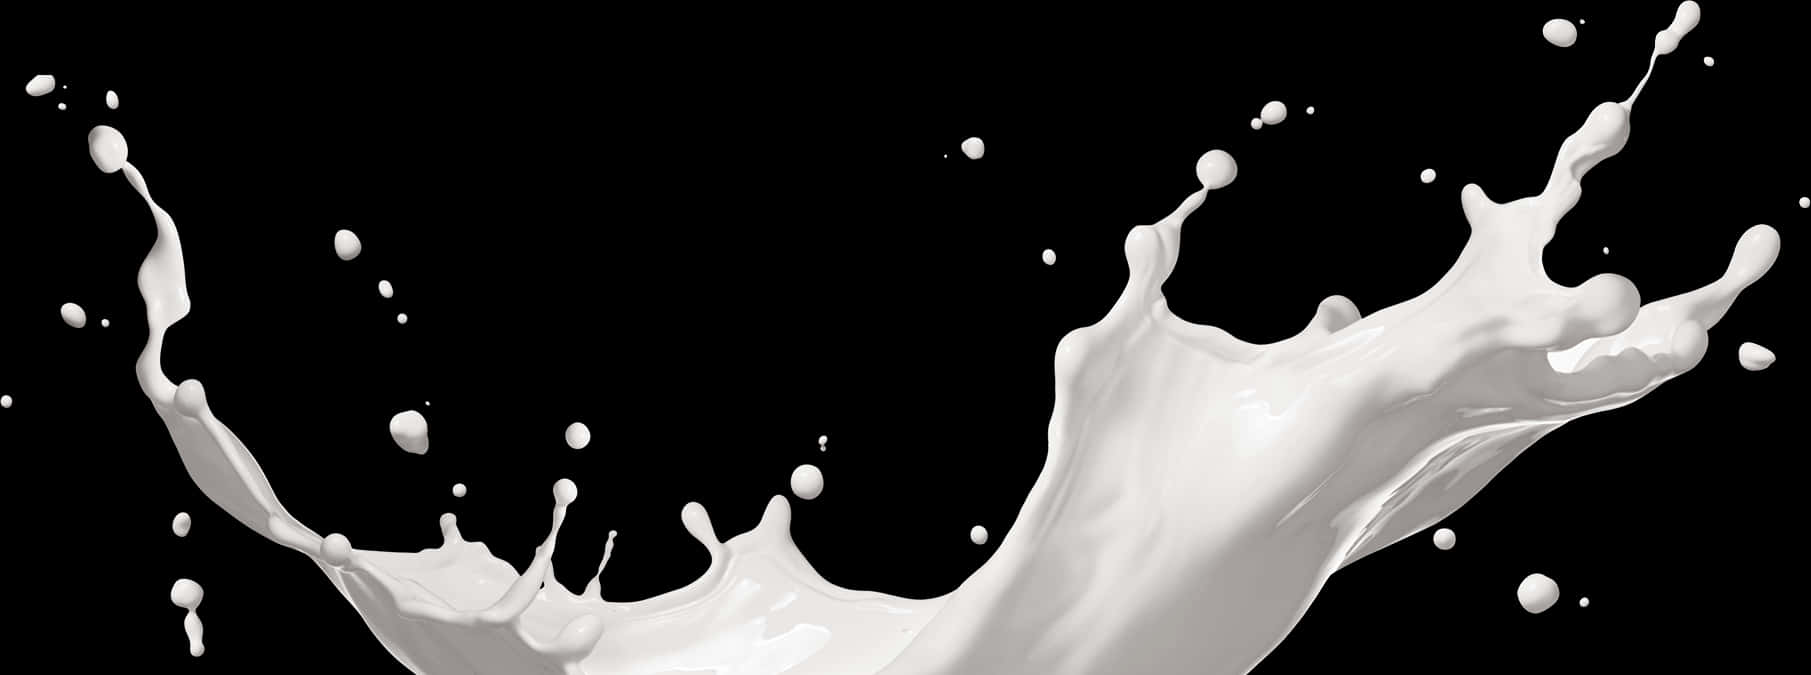 Milk Splash Going Up